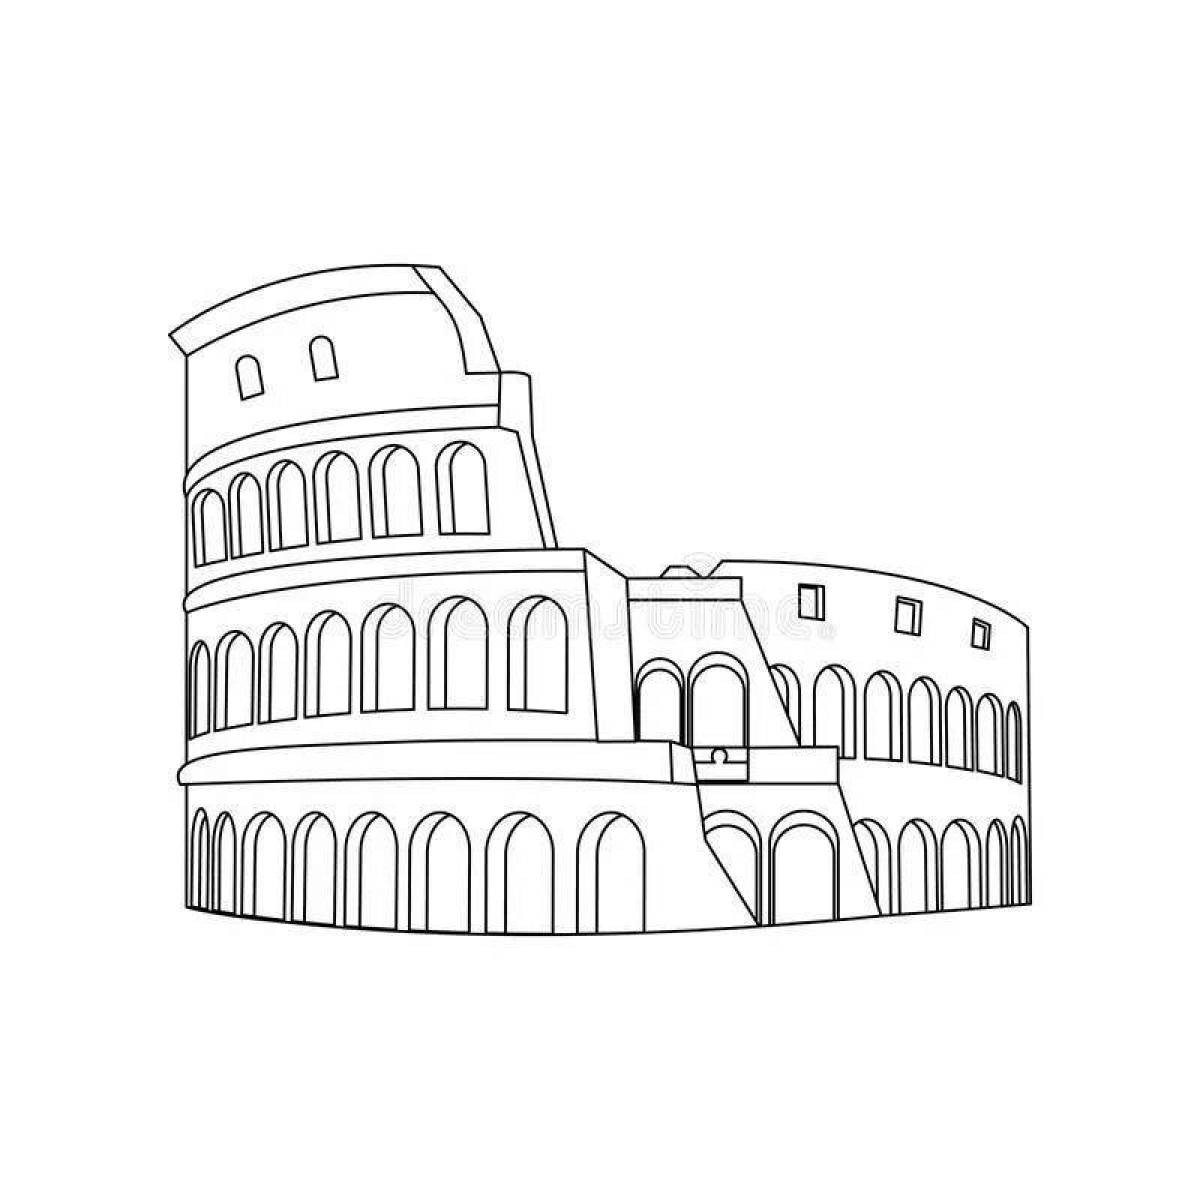 Colosseum #13